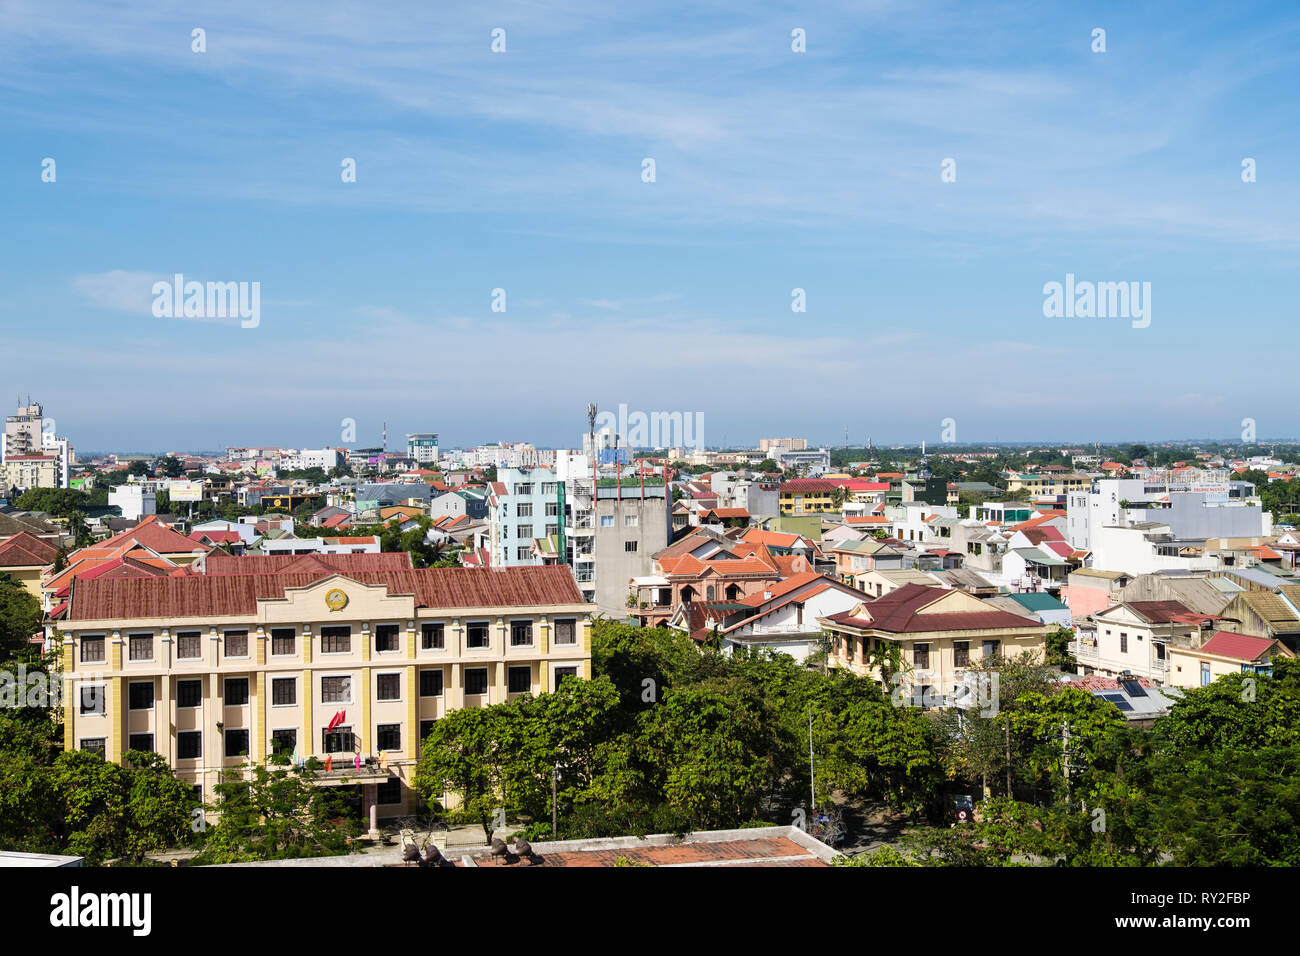 Hohe Aussicht über die Dächer von modernen Gebäuden in Hue - Provinz Thua Thien Hue, Vietnam, Asien Stockfoto